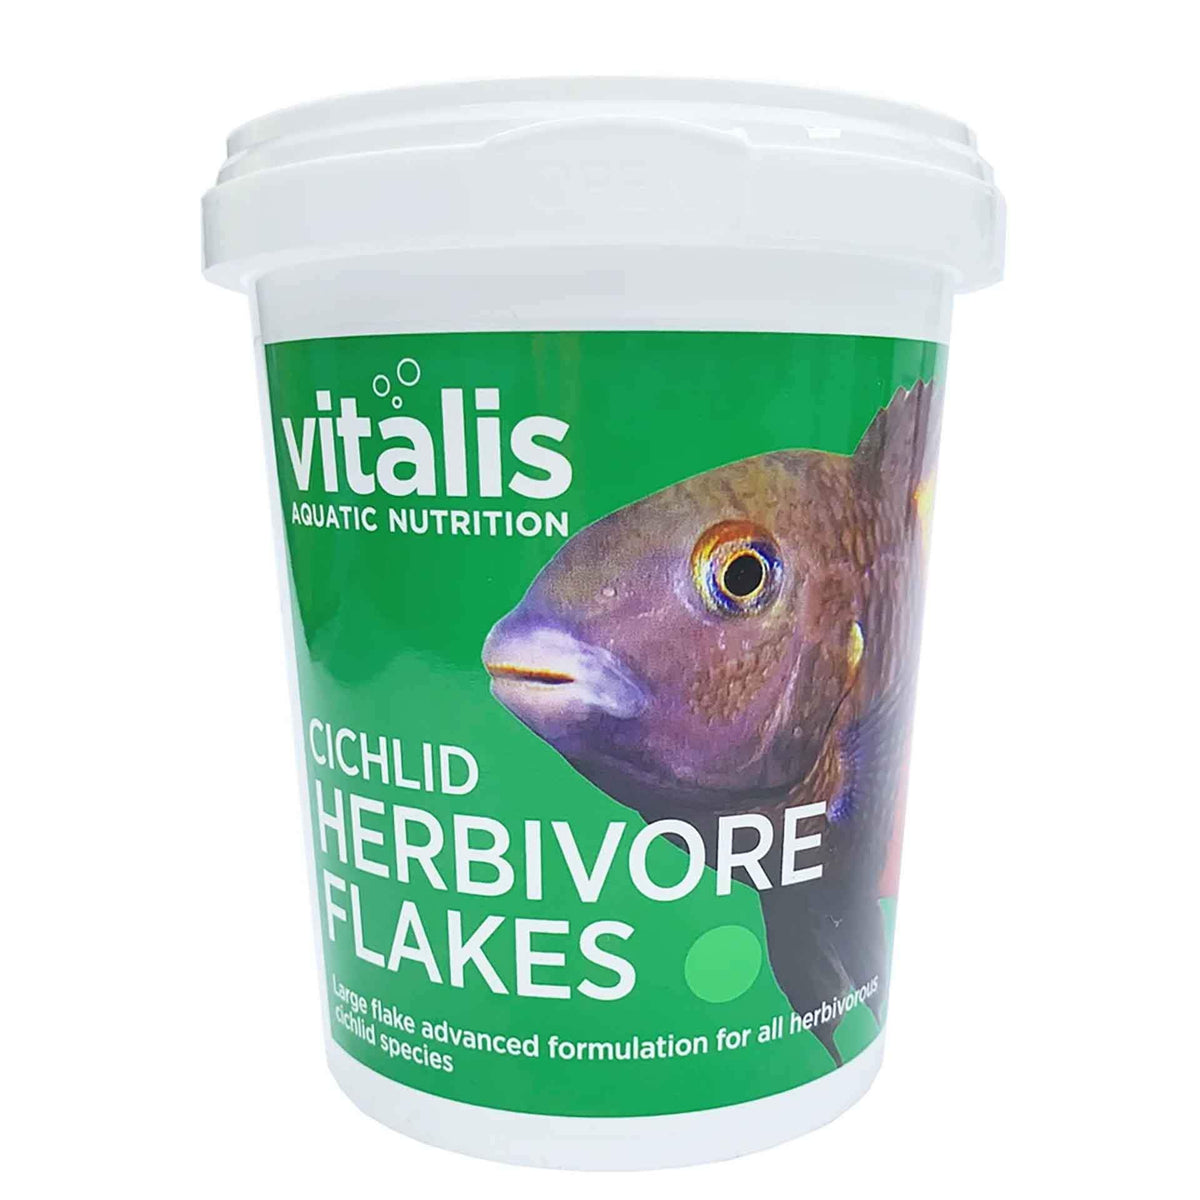 Vitalis Cichlid Herbivore Flakes 90g Fish Food